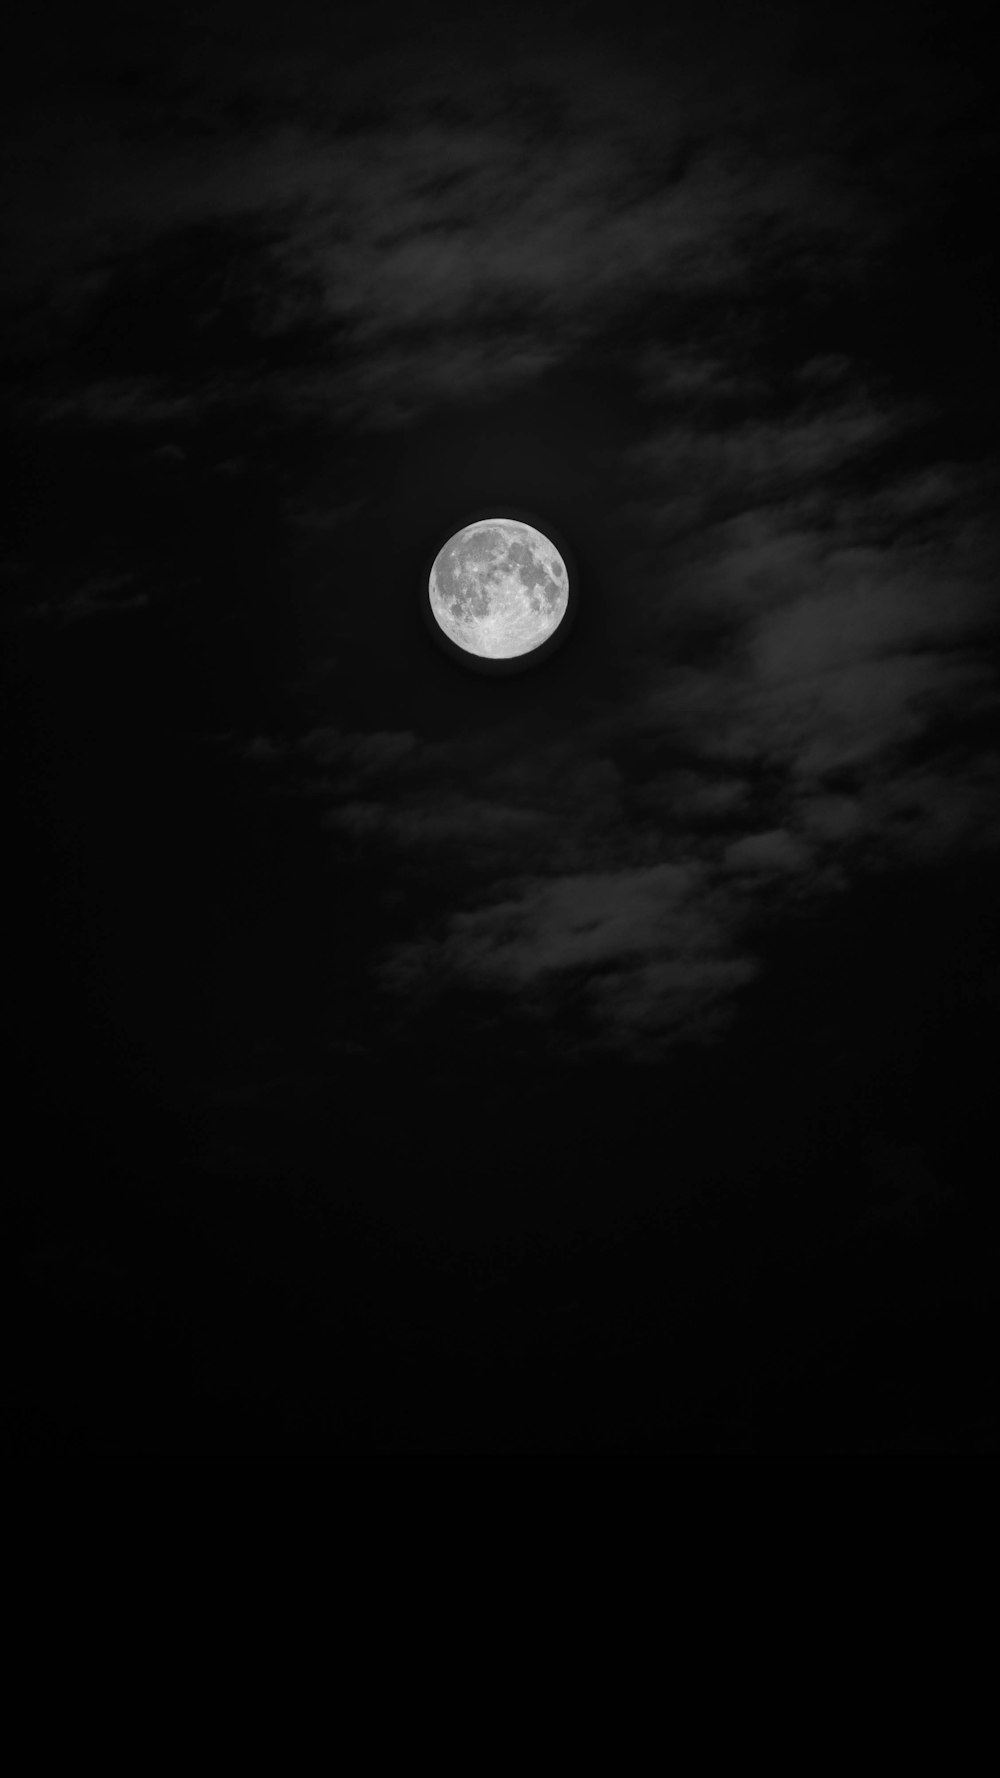 グレースケール写真の満月